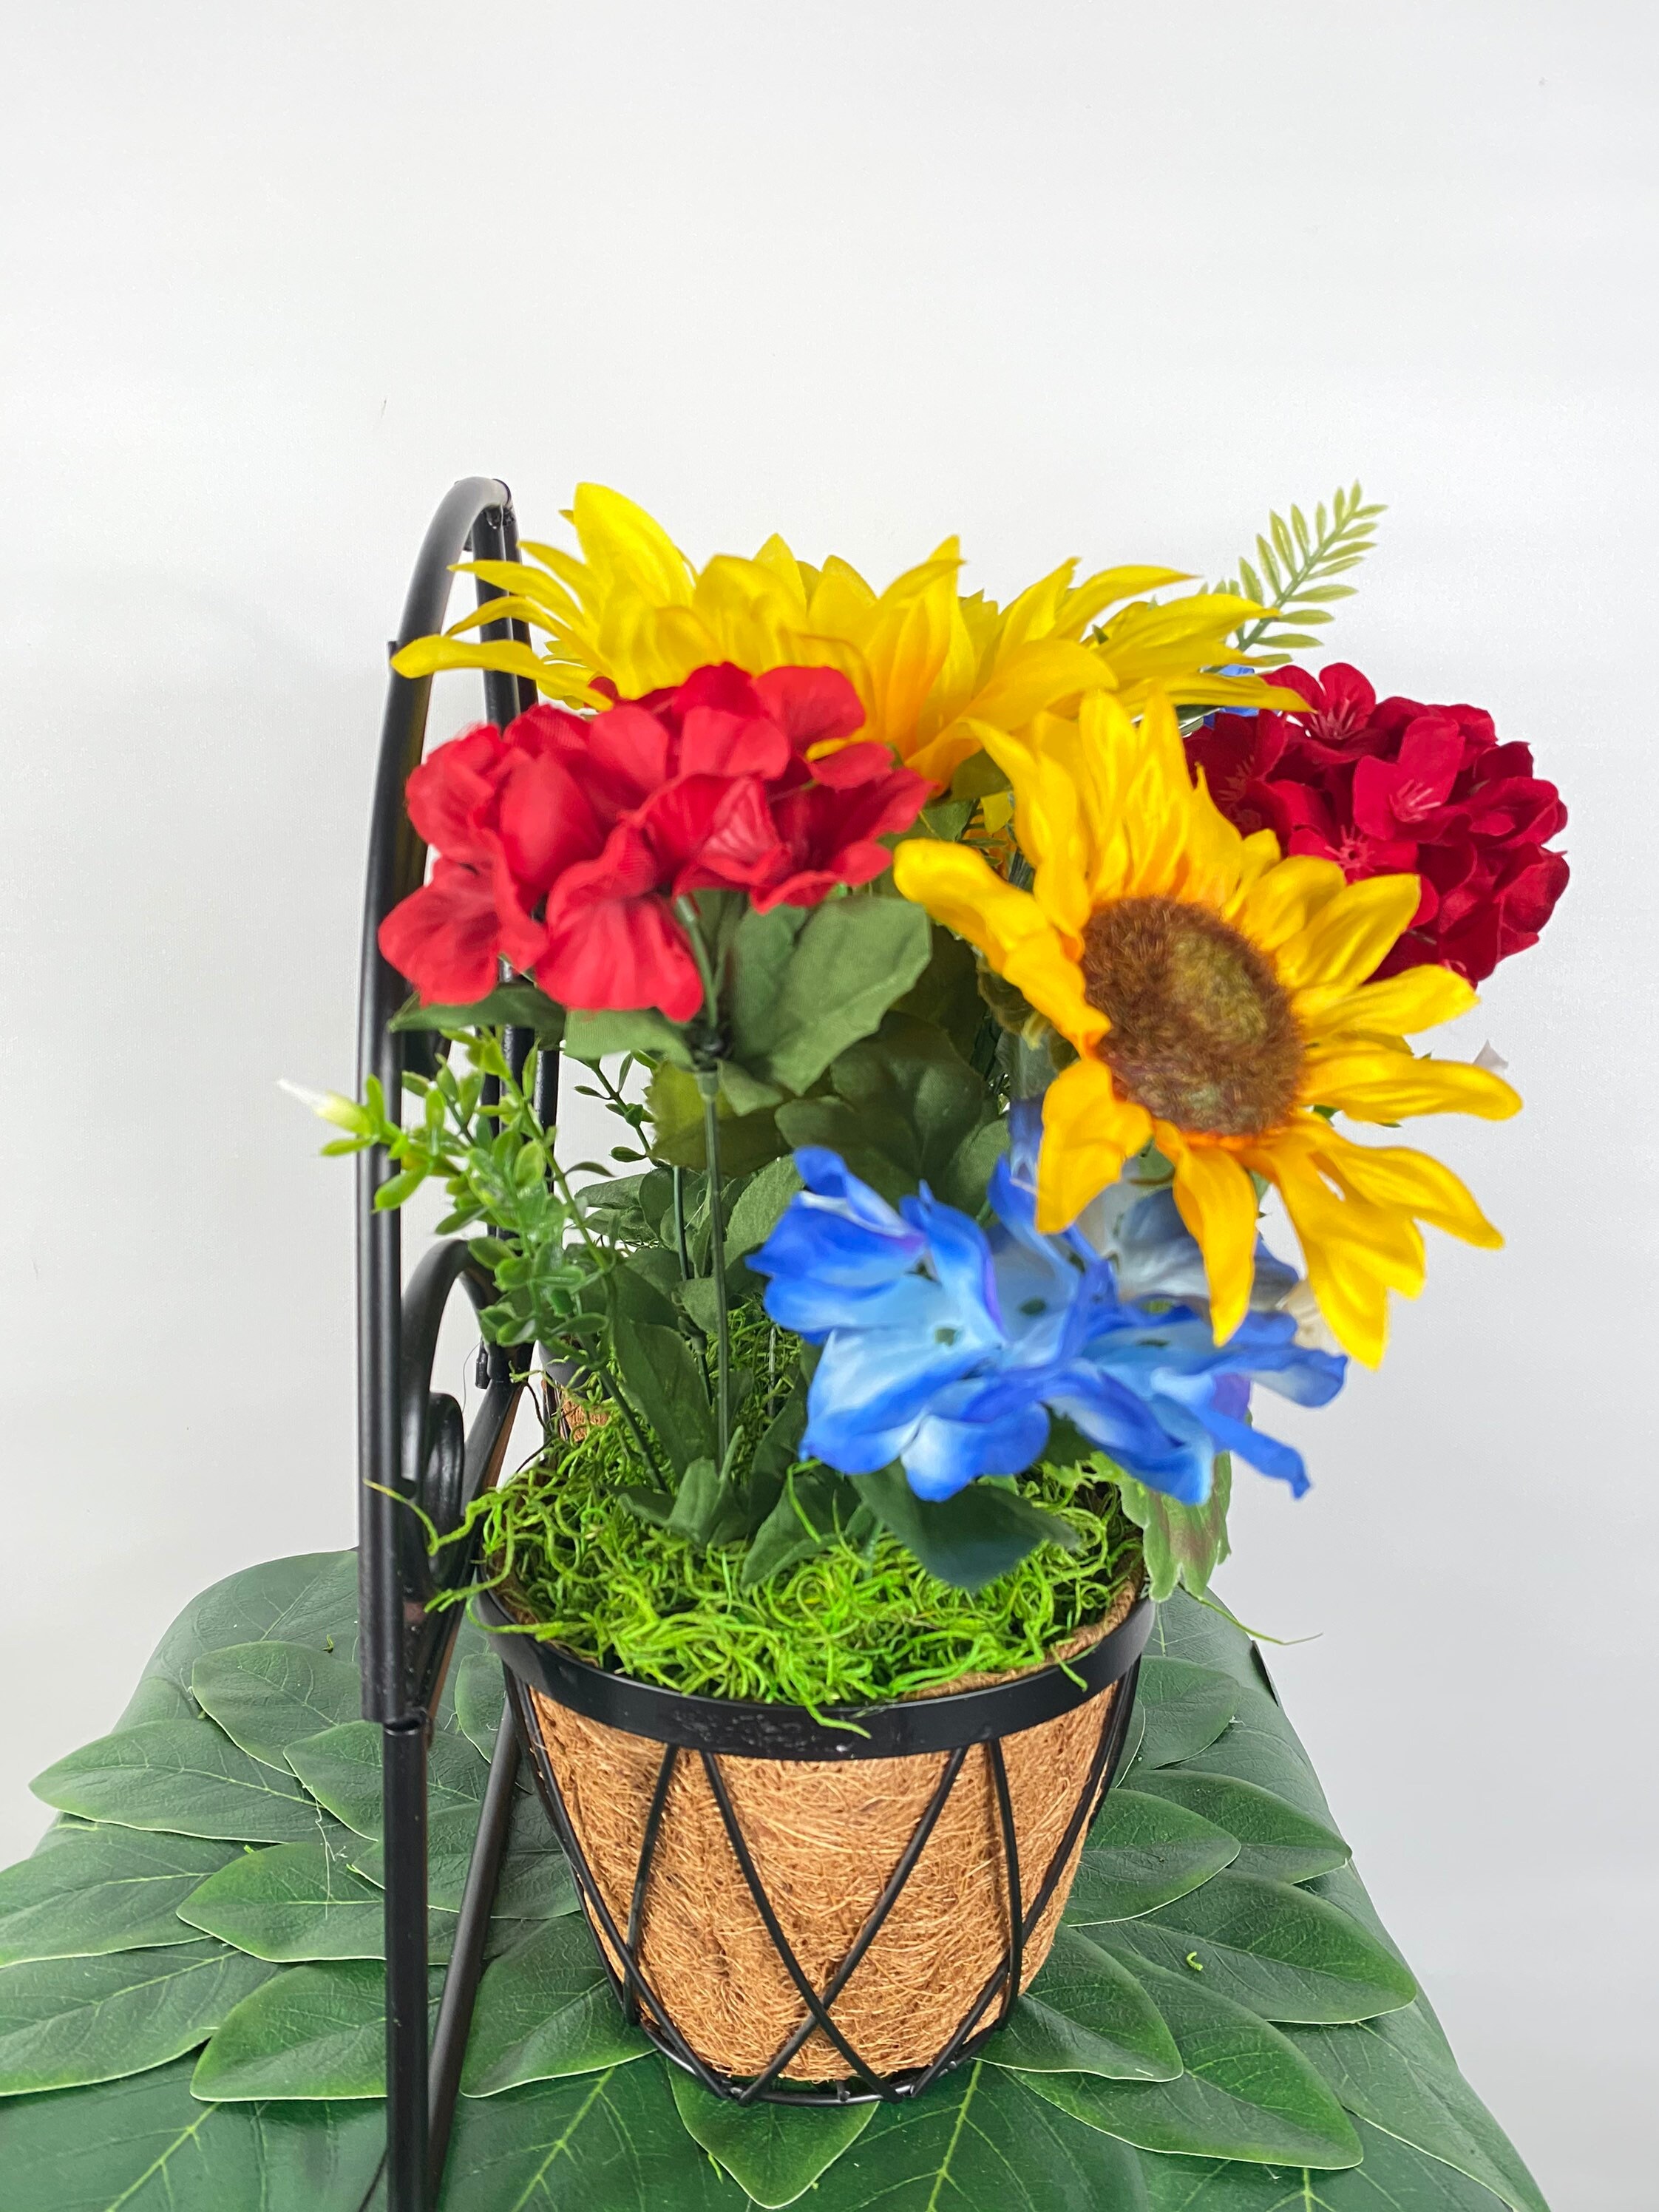 Sunflowers, Geraniums and Hydrangeas Summer Arrangement. Summer Decor,  Porch Decor. -  UK